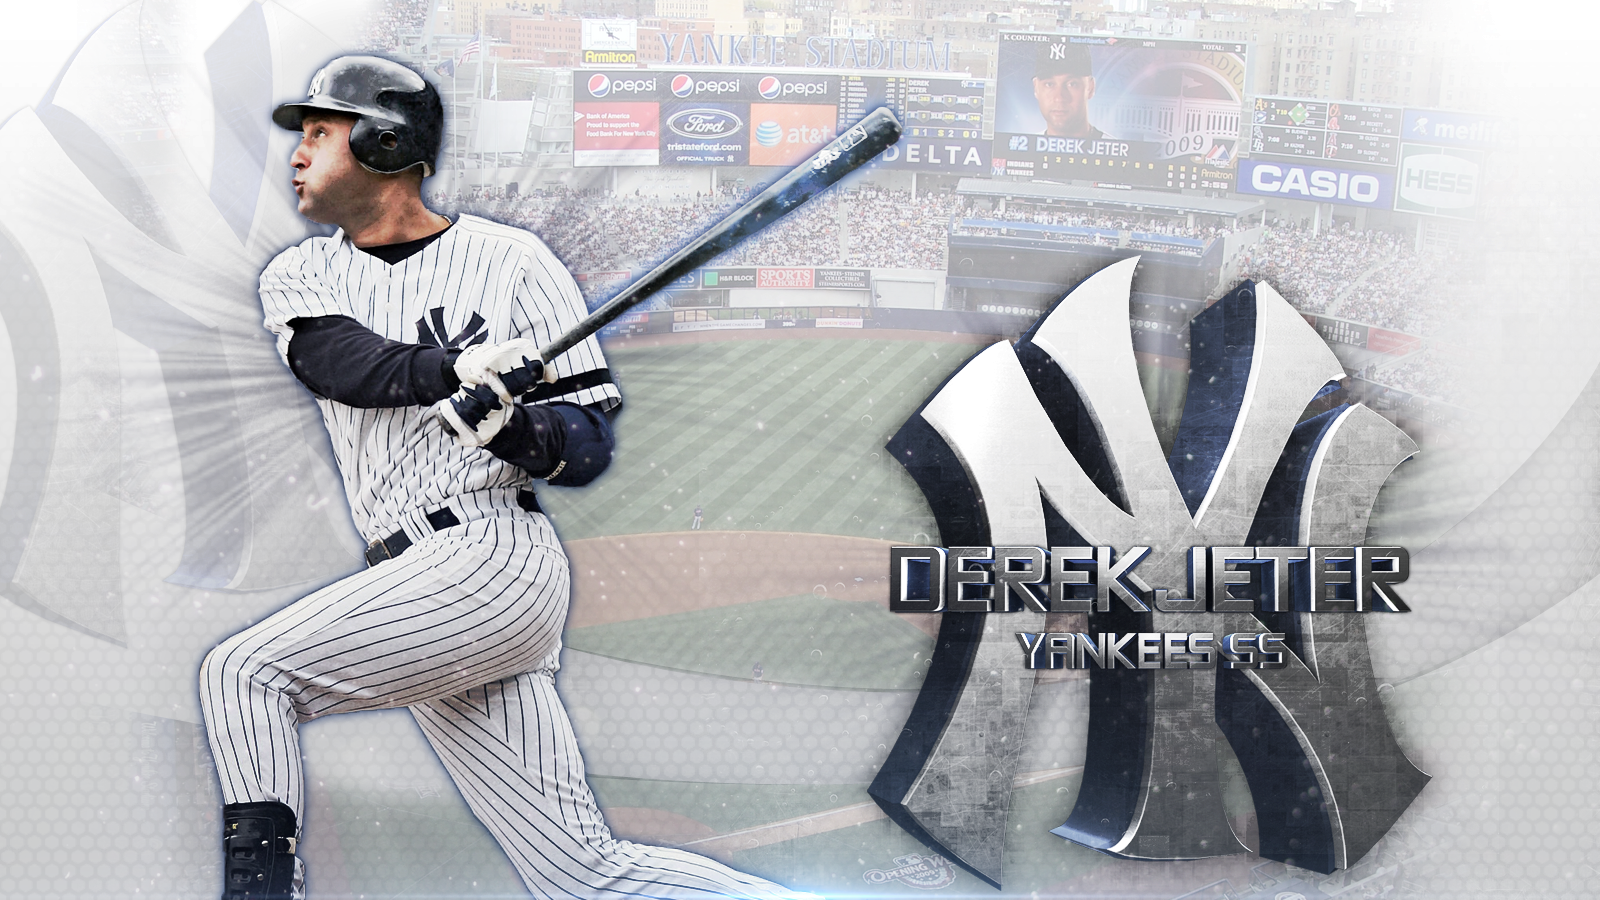 DEREK JETER #2  Derek jeter wallpaper, Derek jeter, Yankees baseball